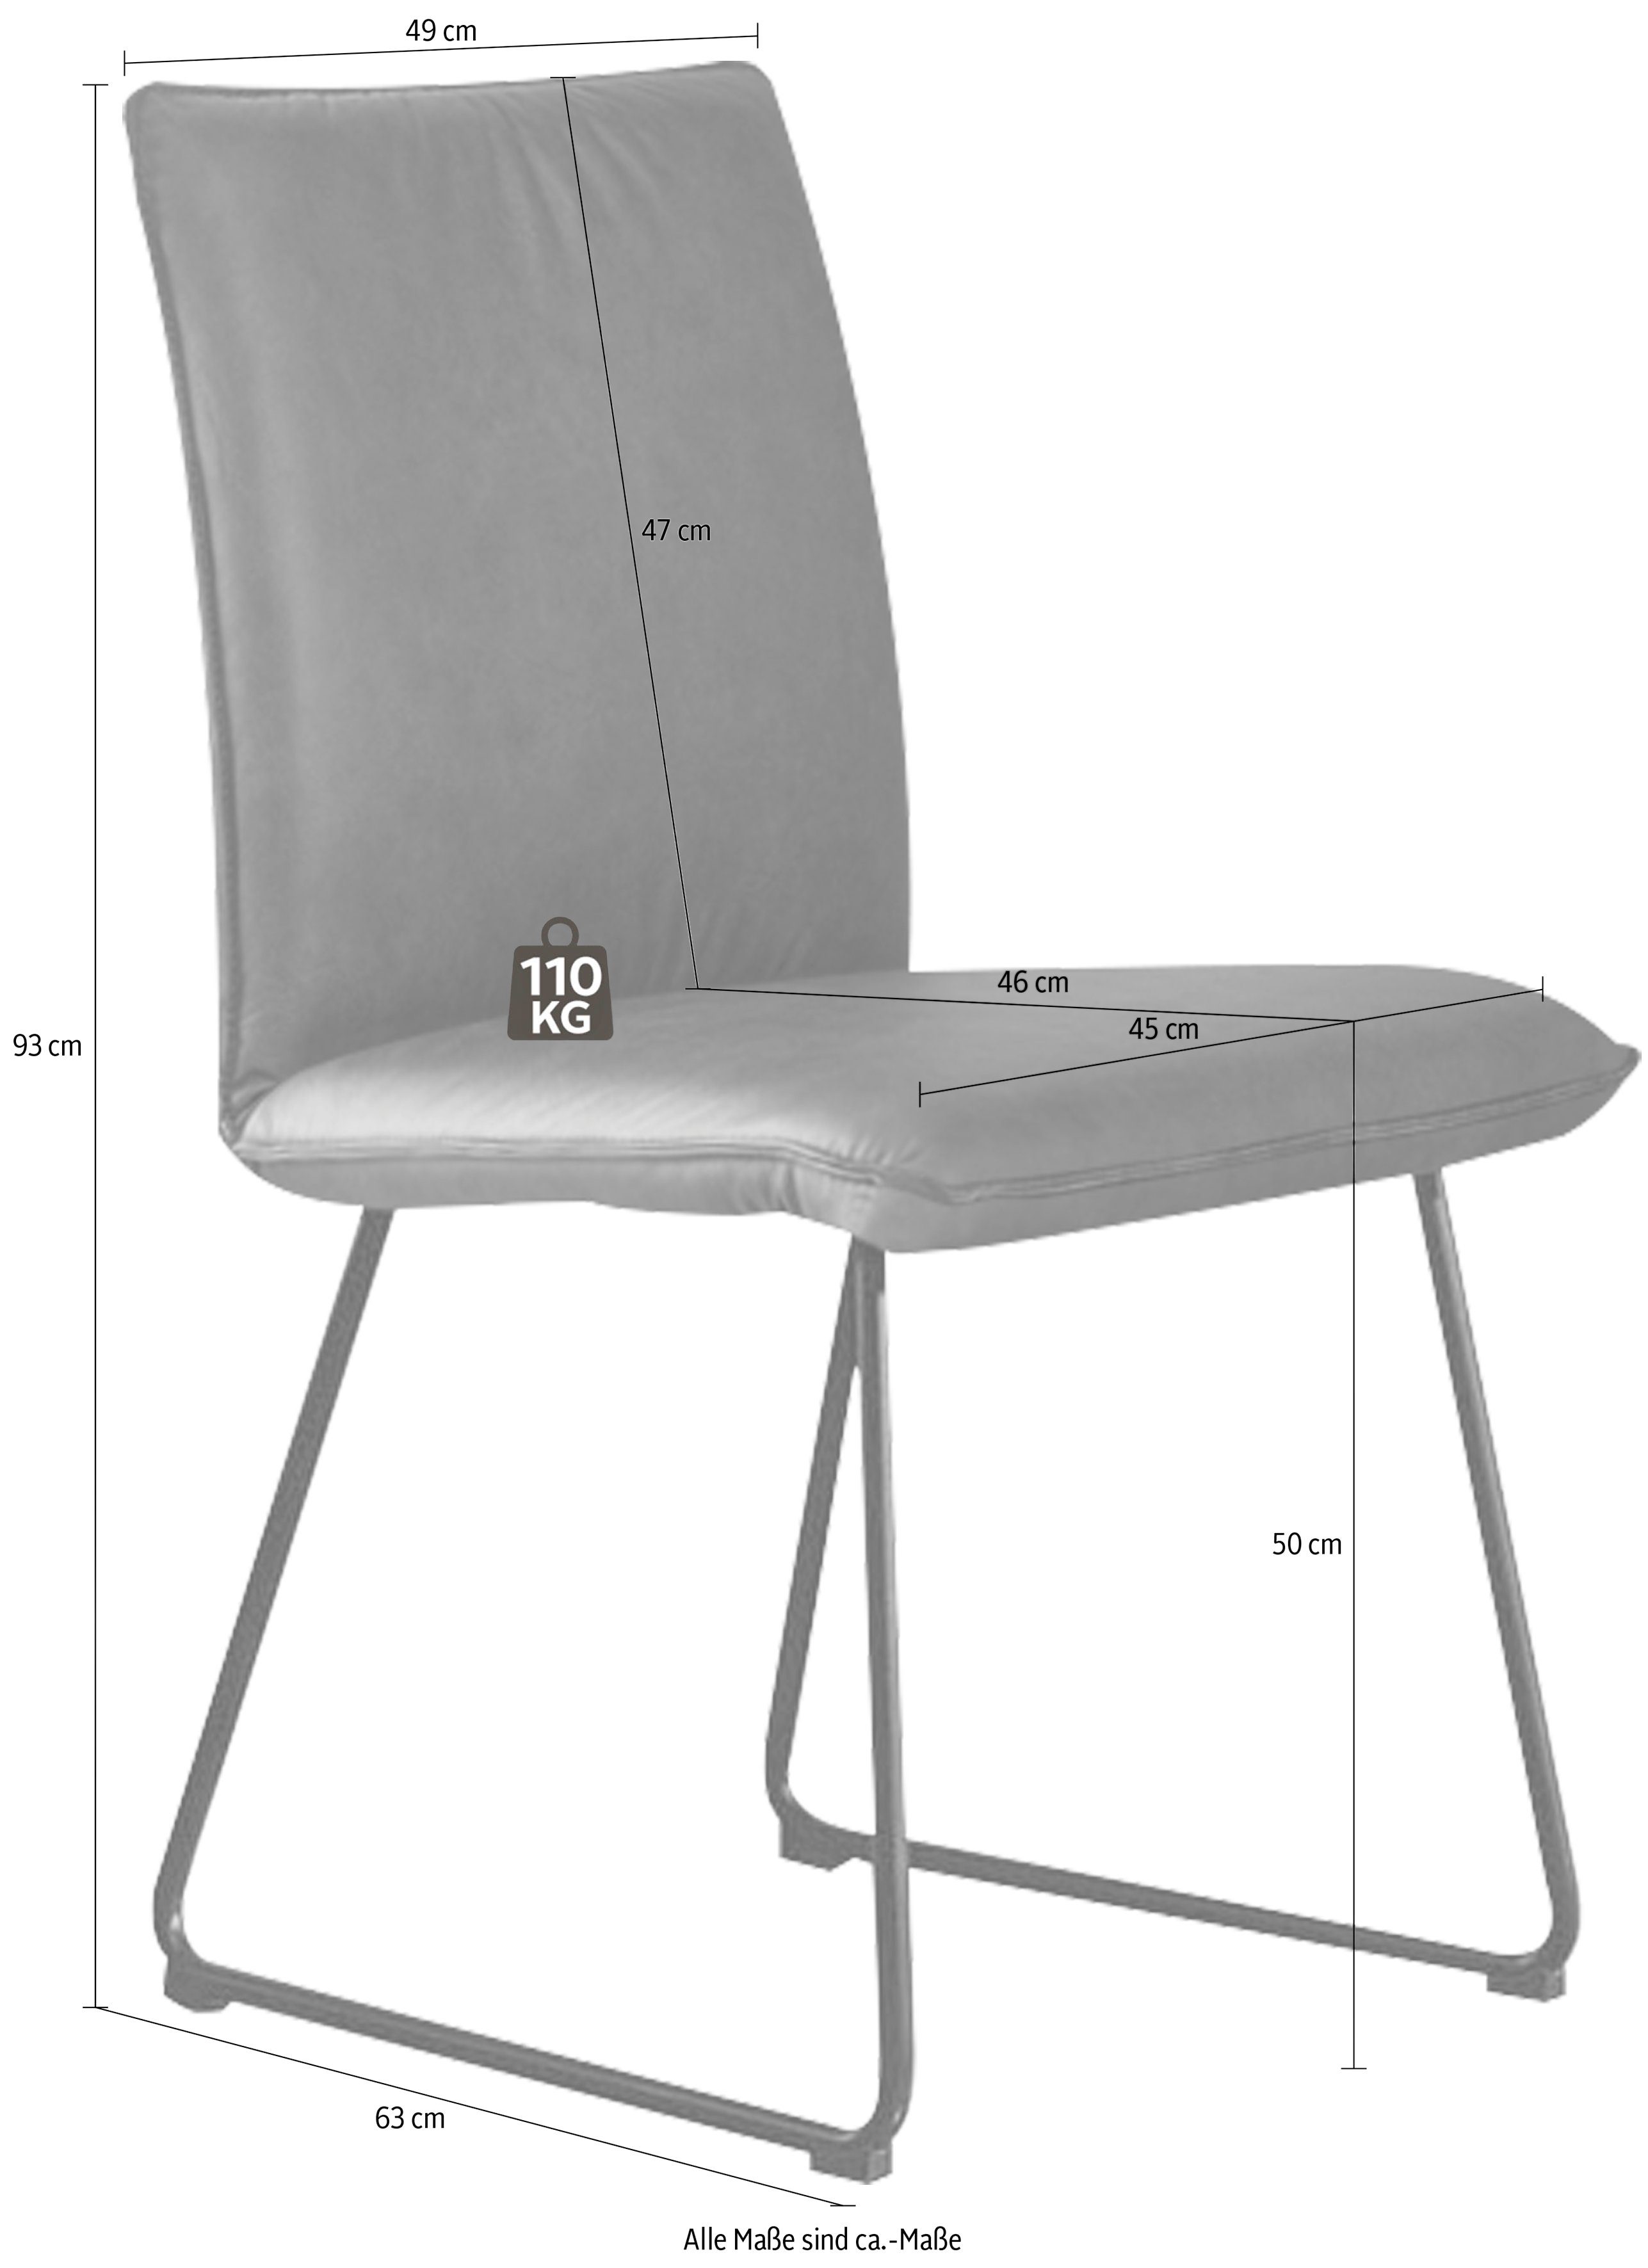 & Deseo Komfort Struktur K+W schwarz in II, Rundrohrkufe Metall Kufenstuhl Stuhl mit Wohnen